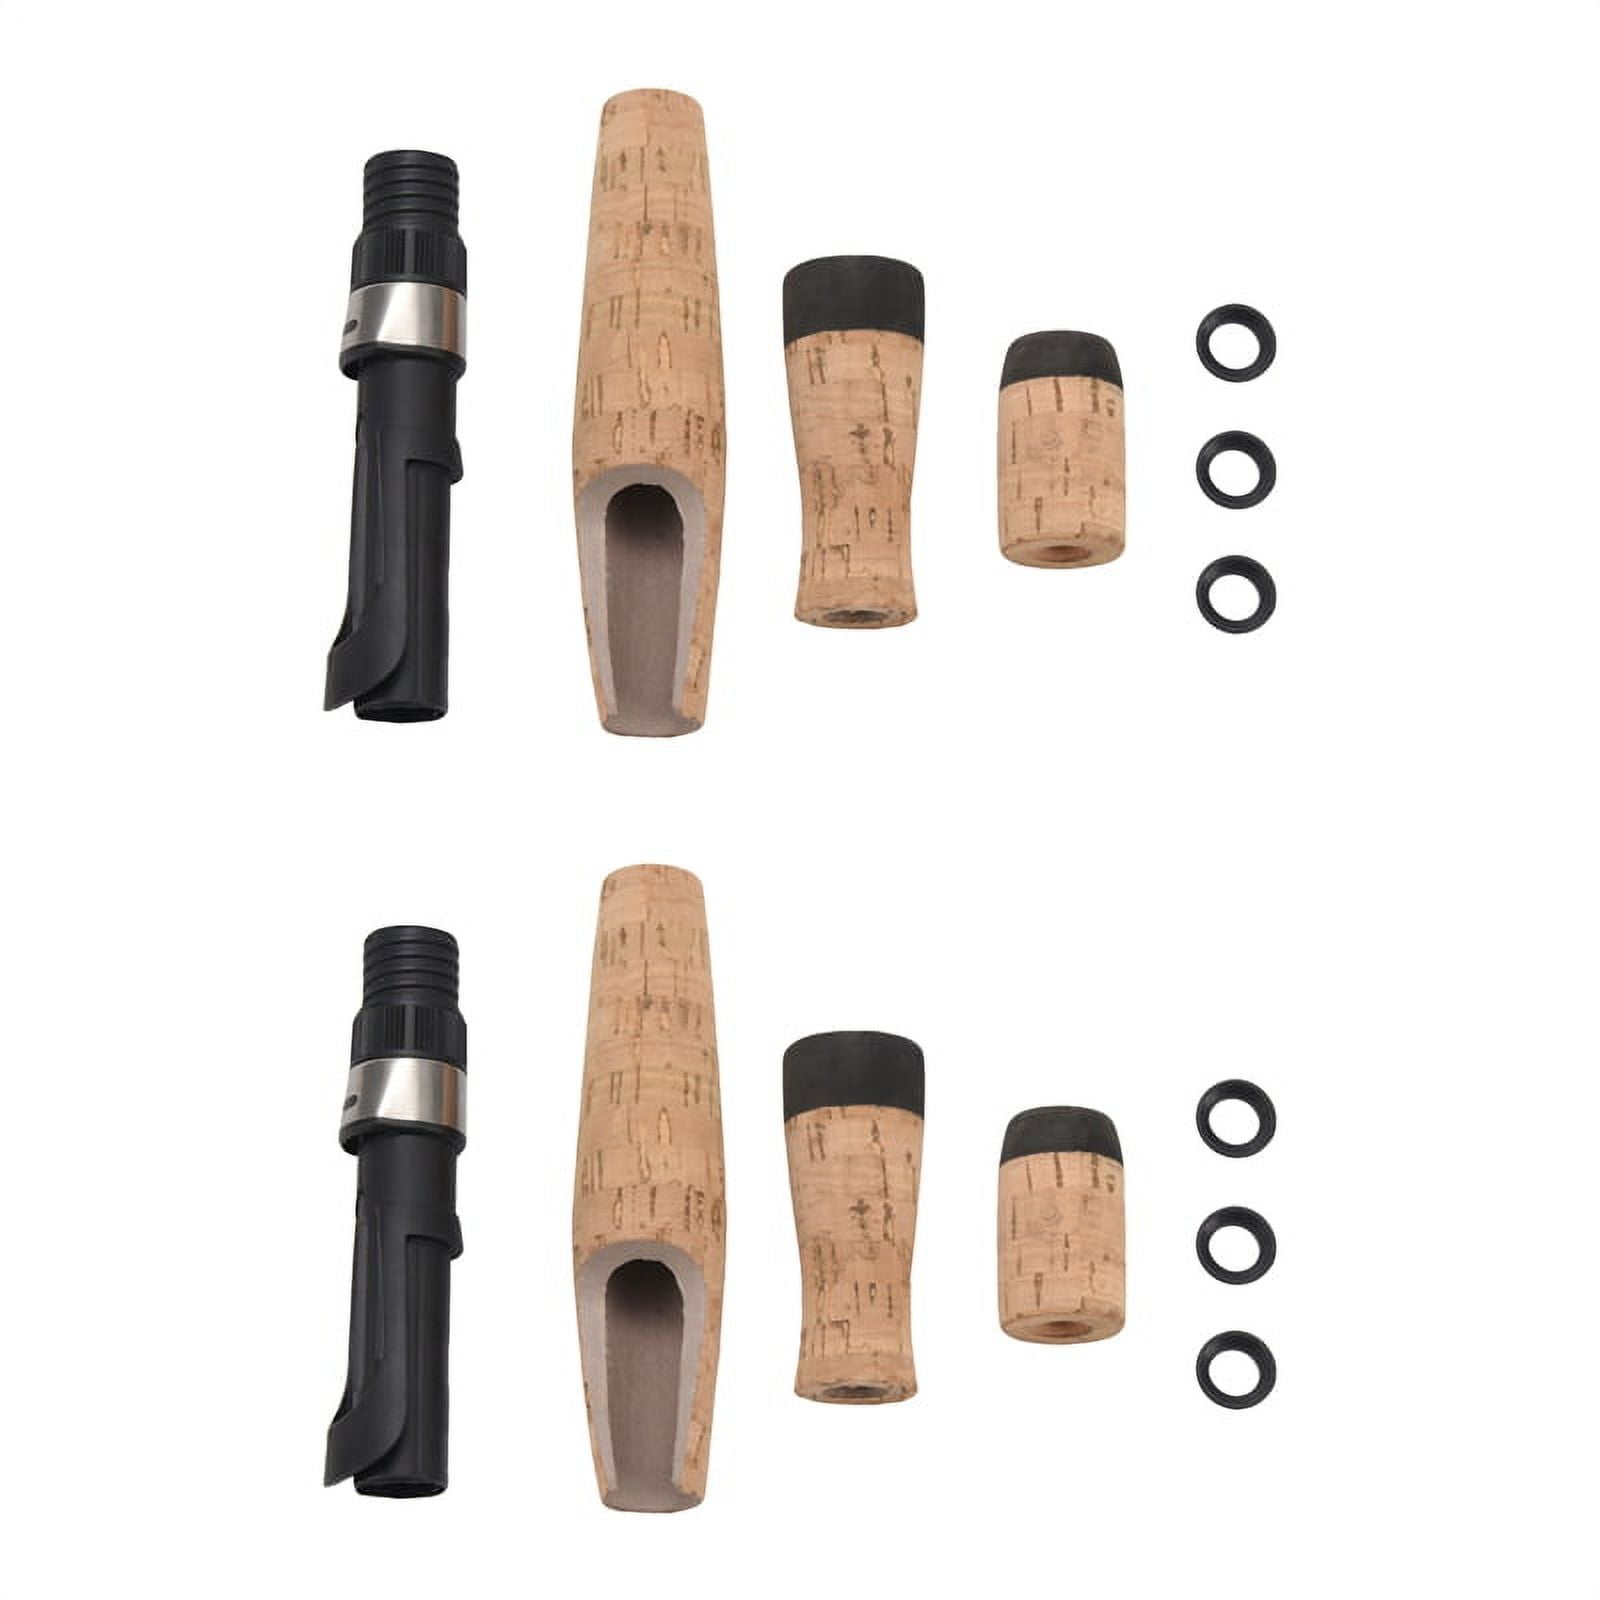 2X DIY Fishing Rod or Repair Composite Cork Handle Spinning Grip Reel